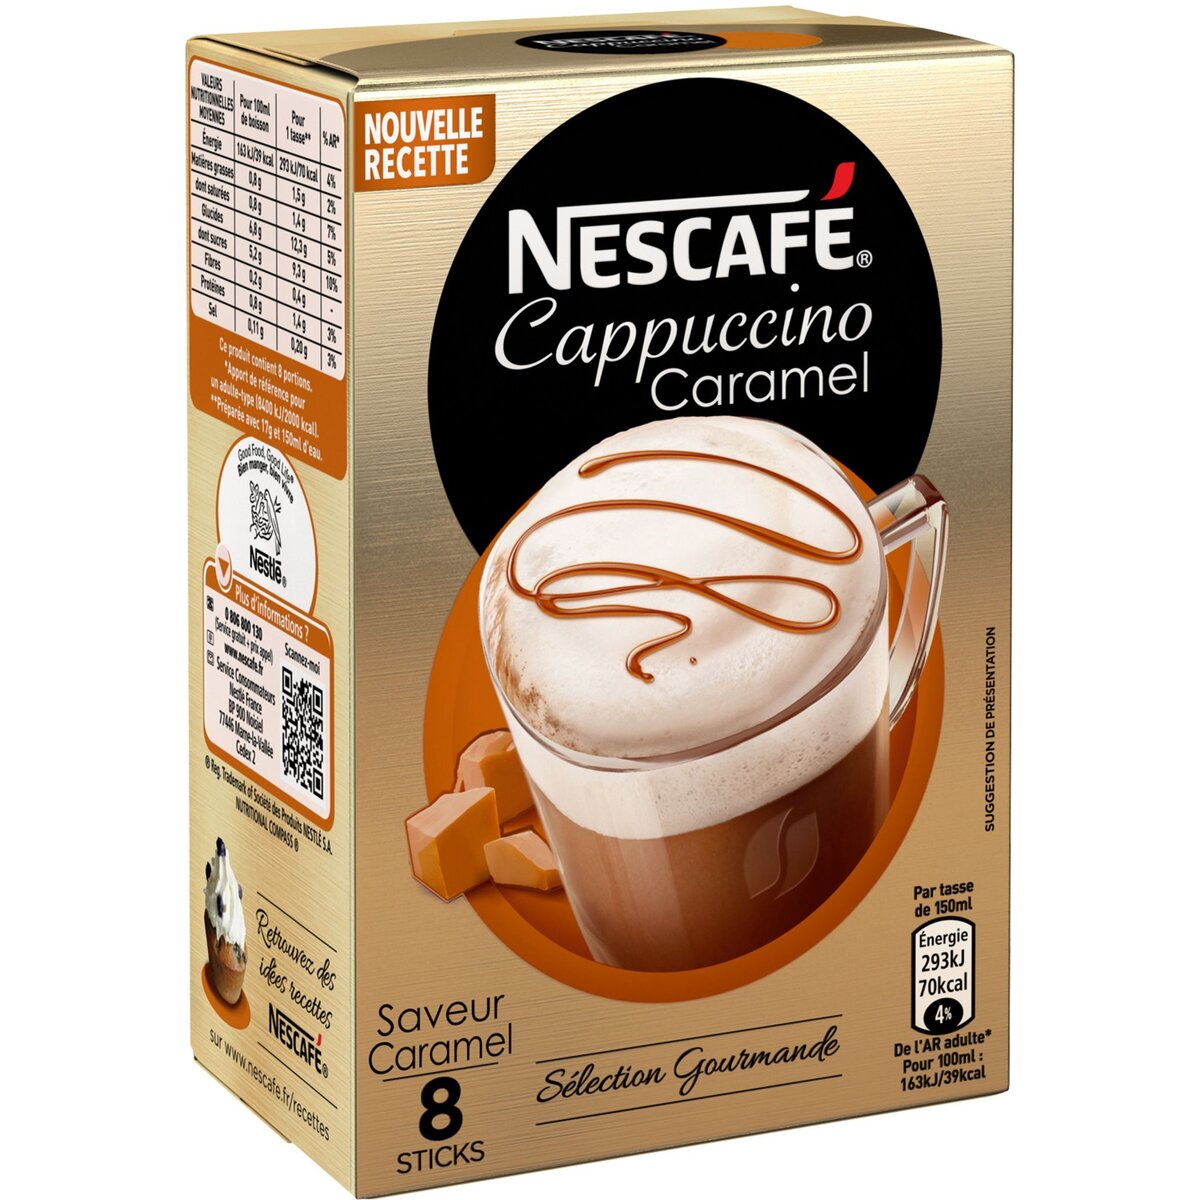 NESCAFE Nescafé cappuccino caramel stick 136g